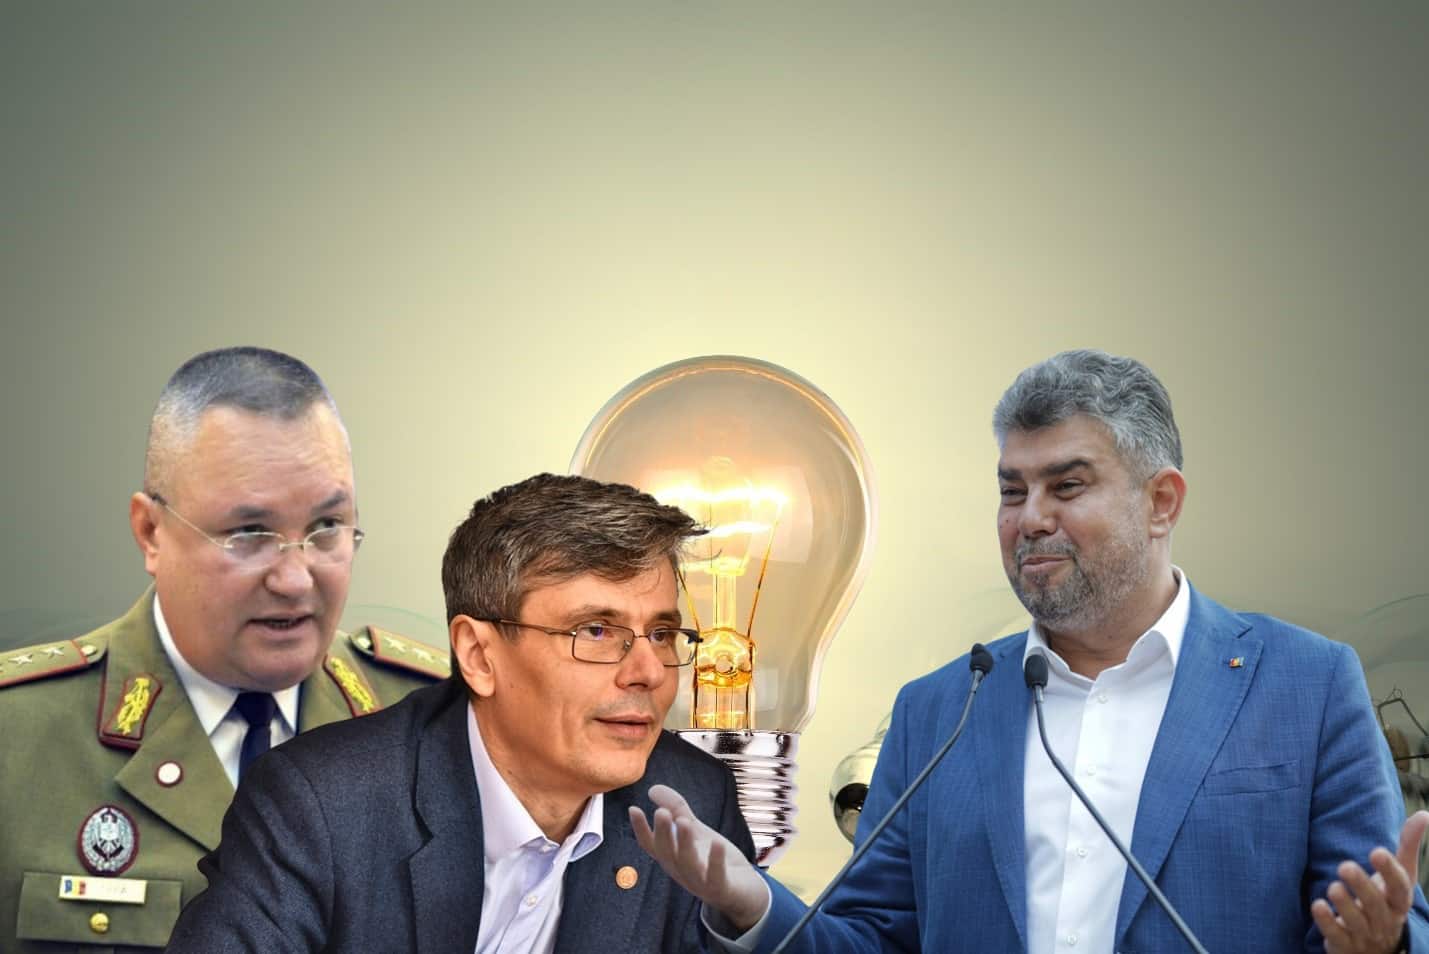 SONDAJ. AUR devine primul partid politic din România, George Simion este cu mult peste Marcel Ciolacu – CRITICII.RO